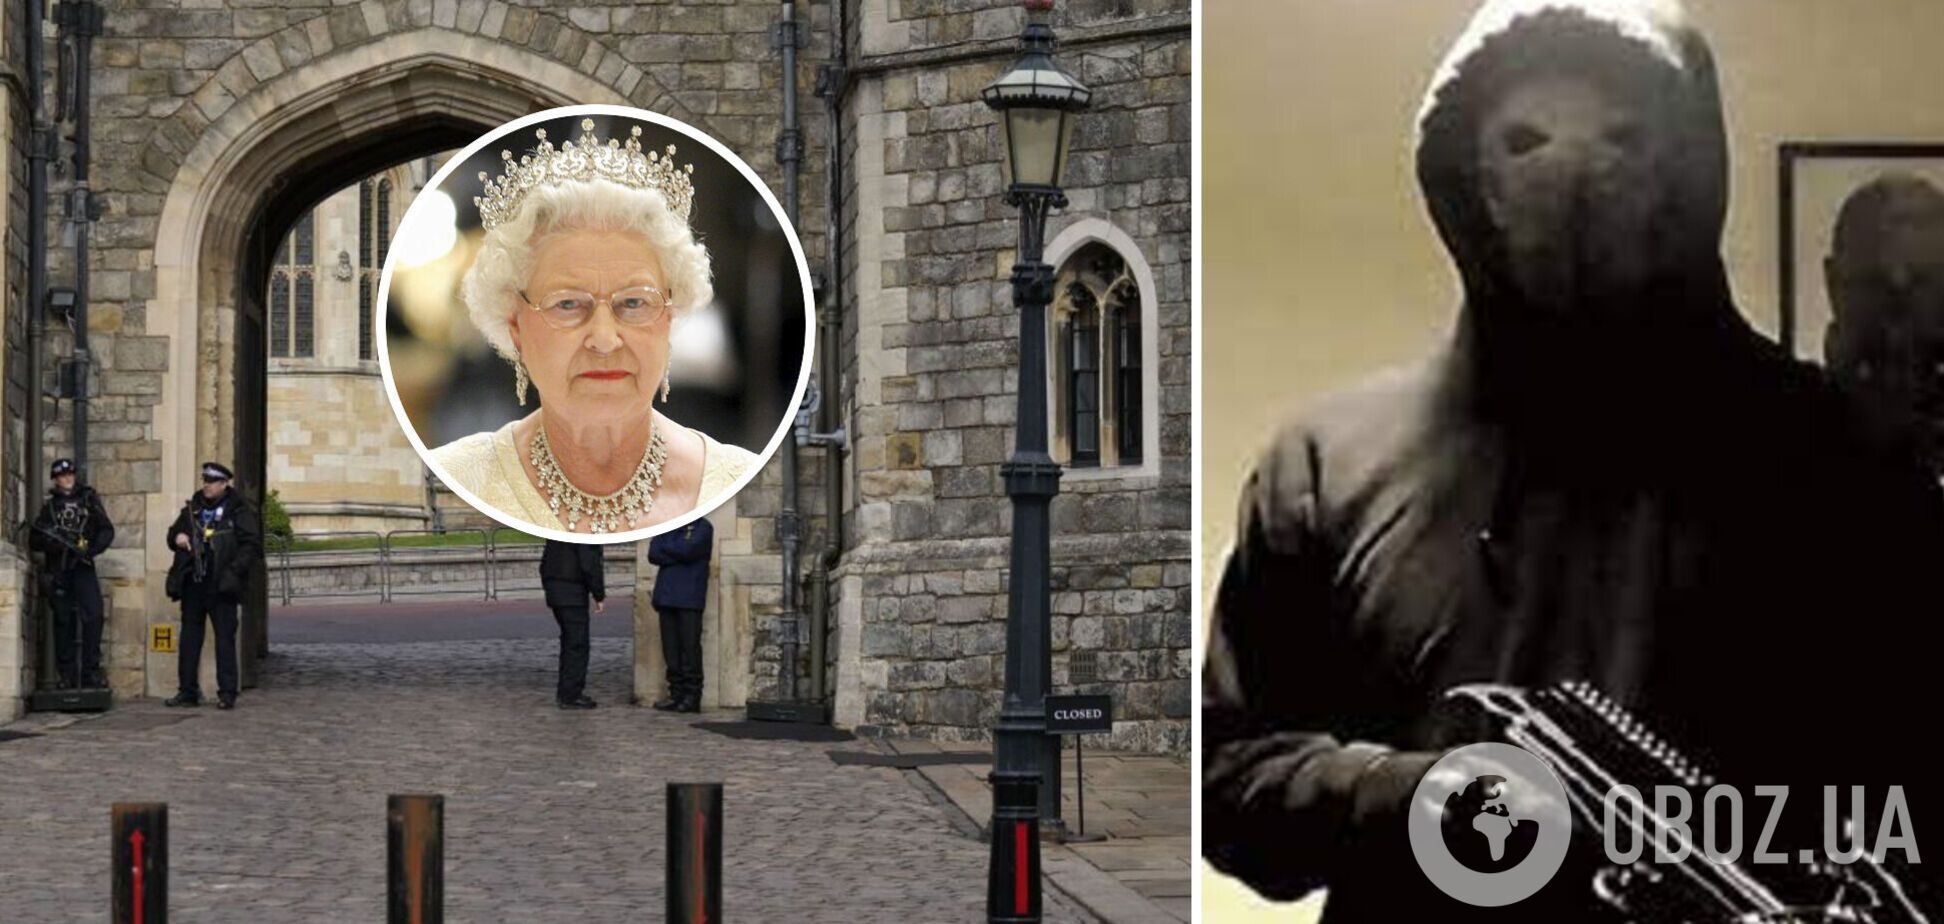 Хотел убить королеву: задержанный с арбалетом возле Виндзорского замка британец признался, что планировал нападение